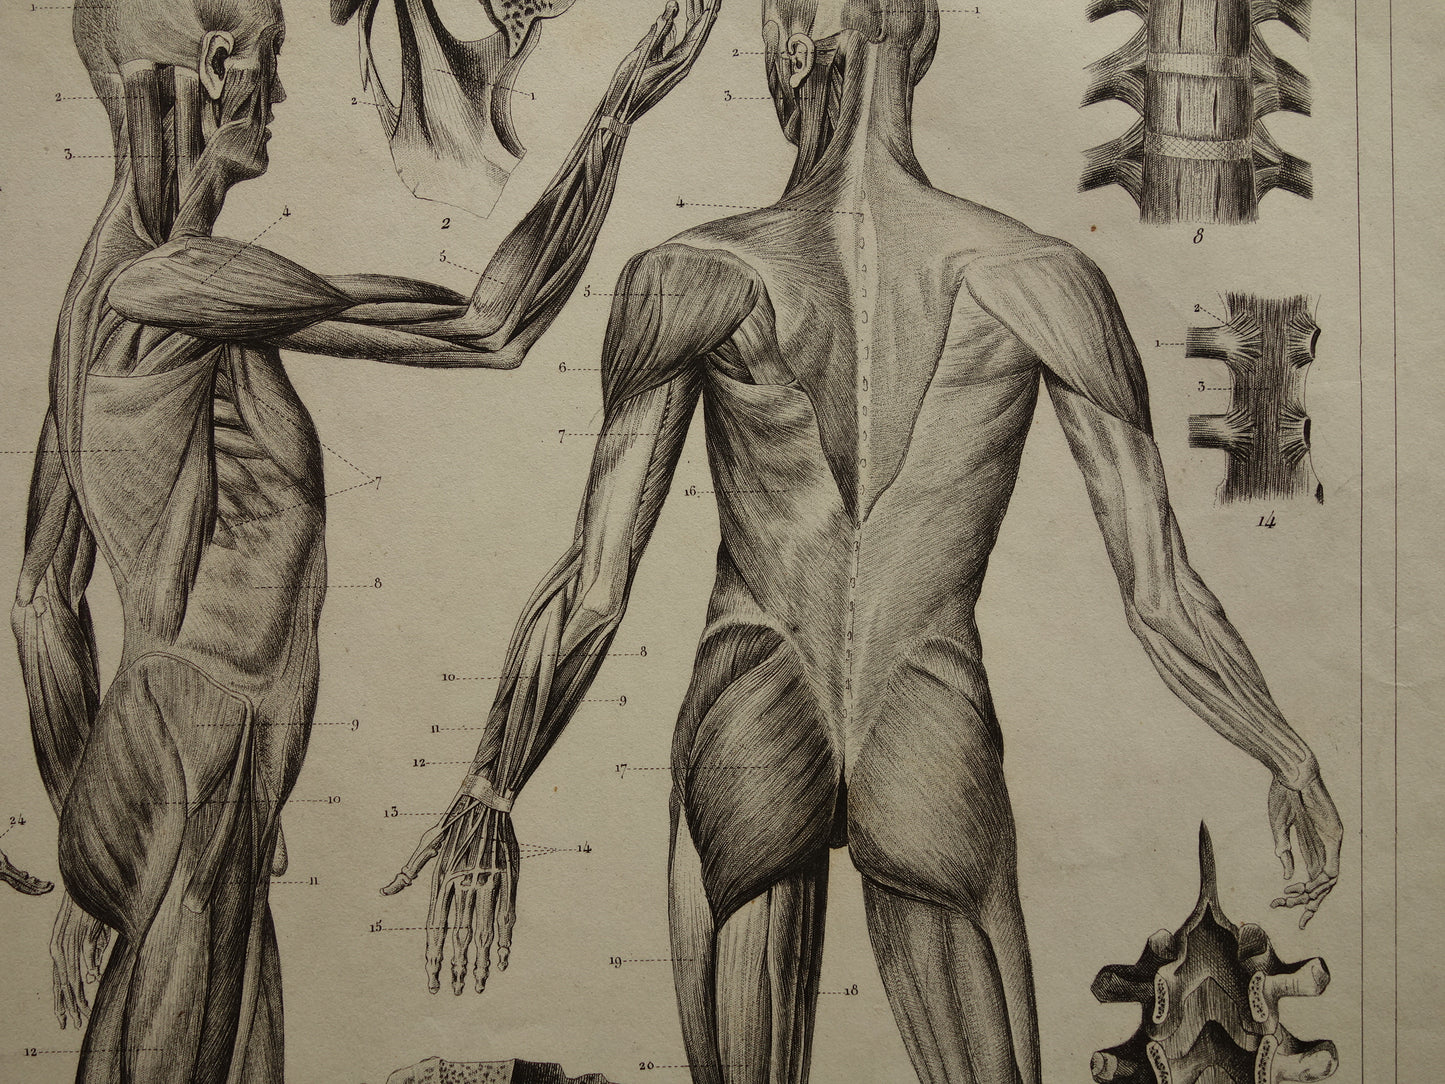 Oude Anatomie Prent Spieren van de Mens Originele 170+ jaar oude Illustratie Vintage Anatomische Prenten